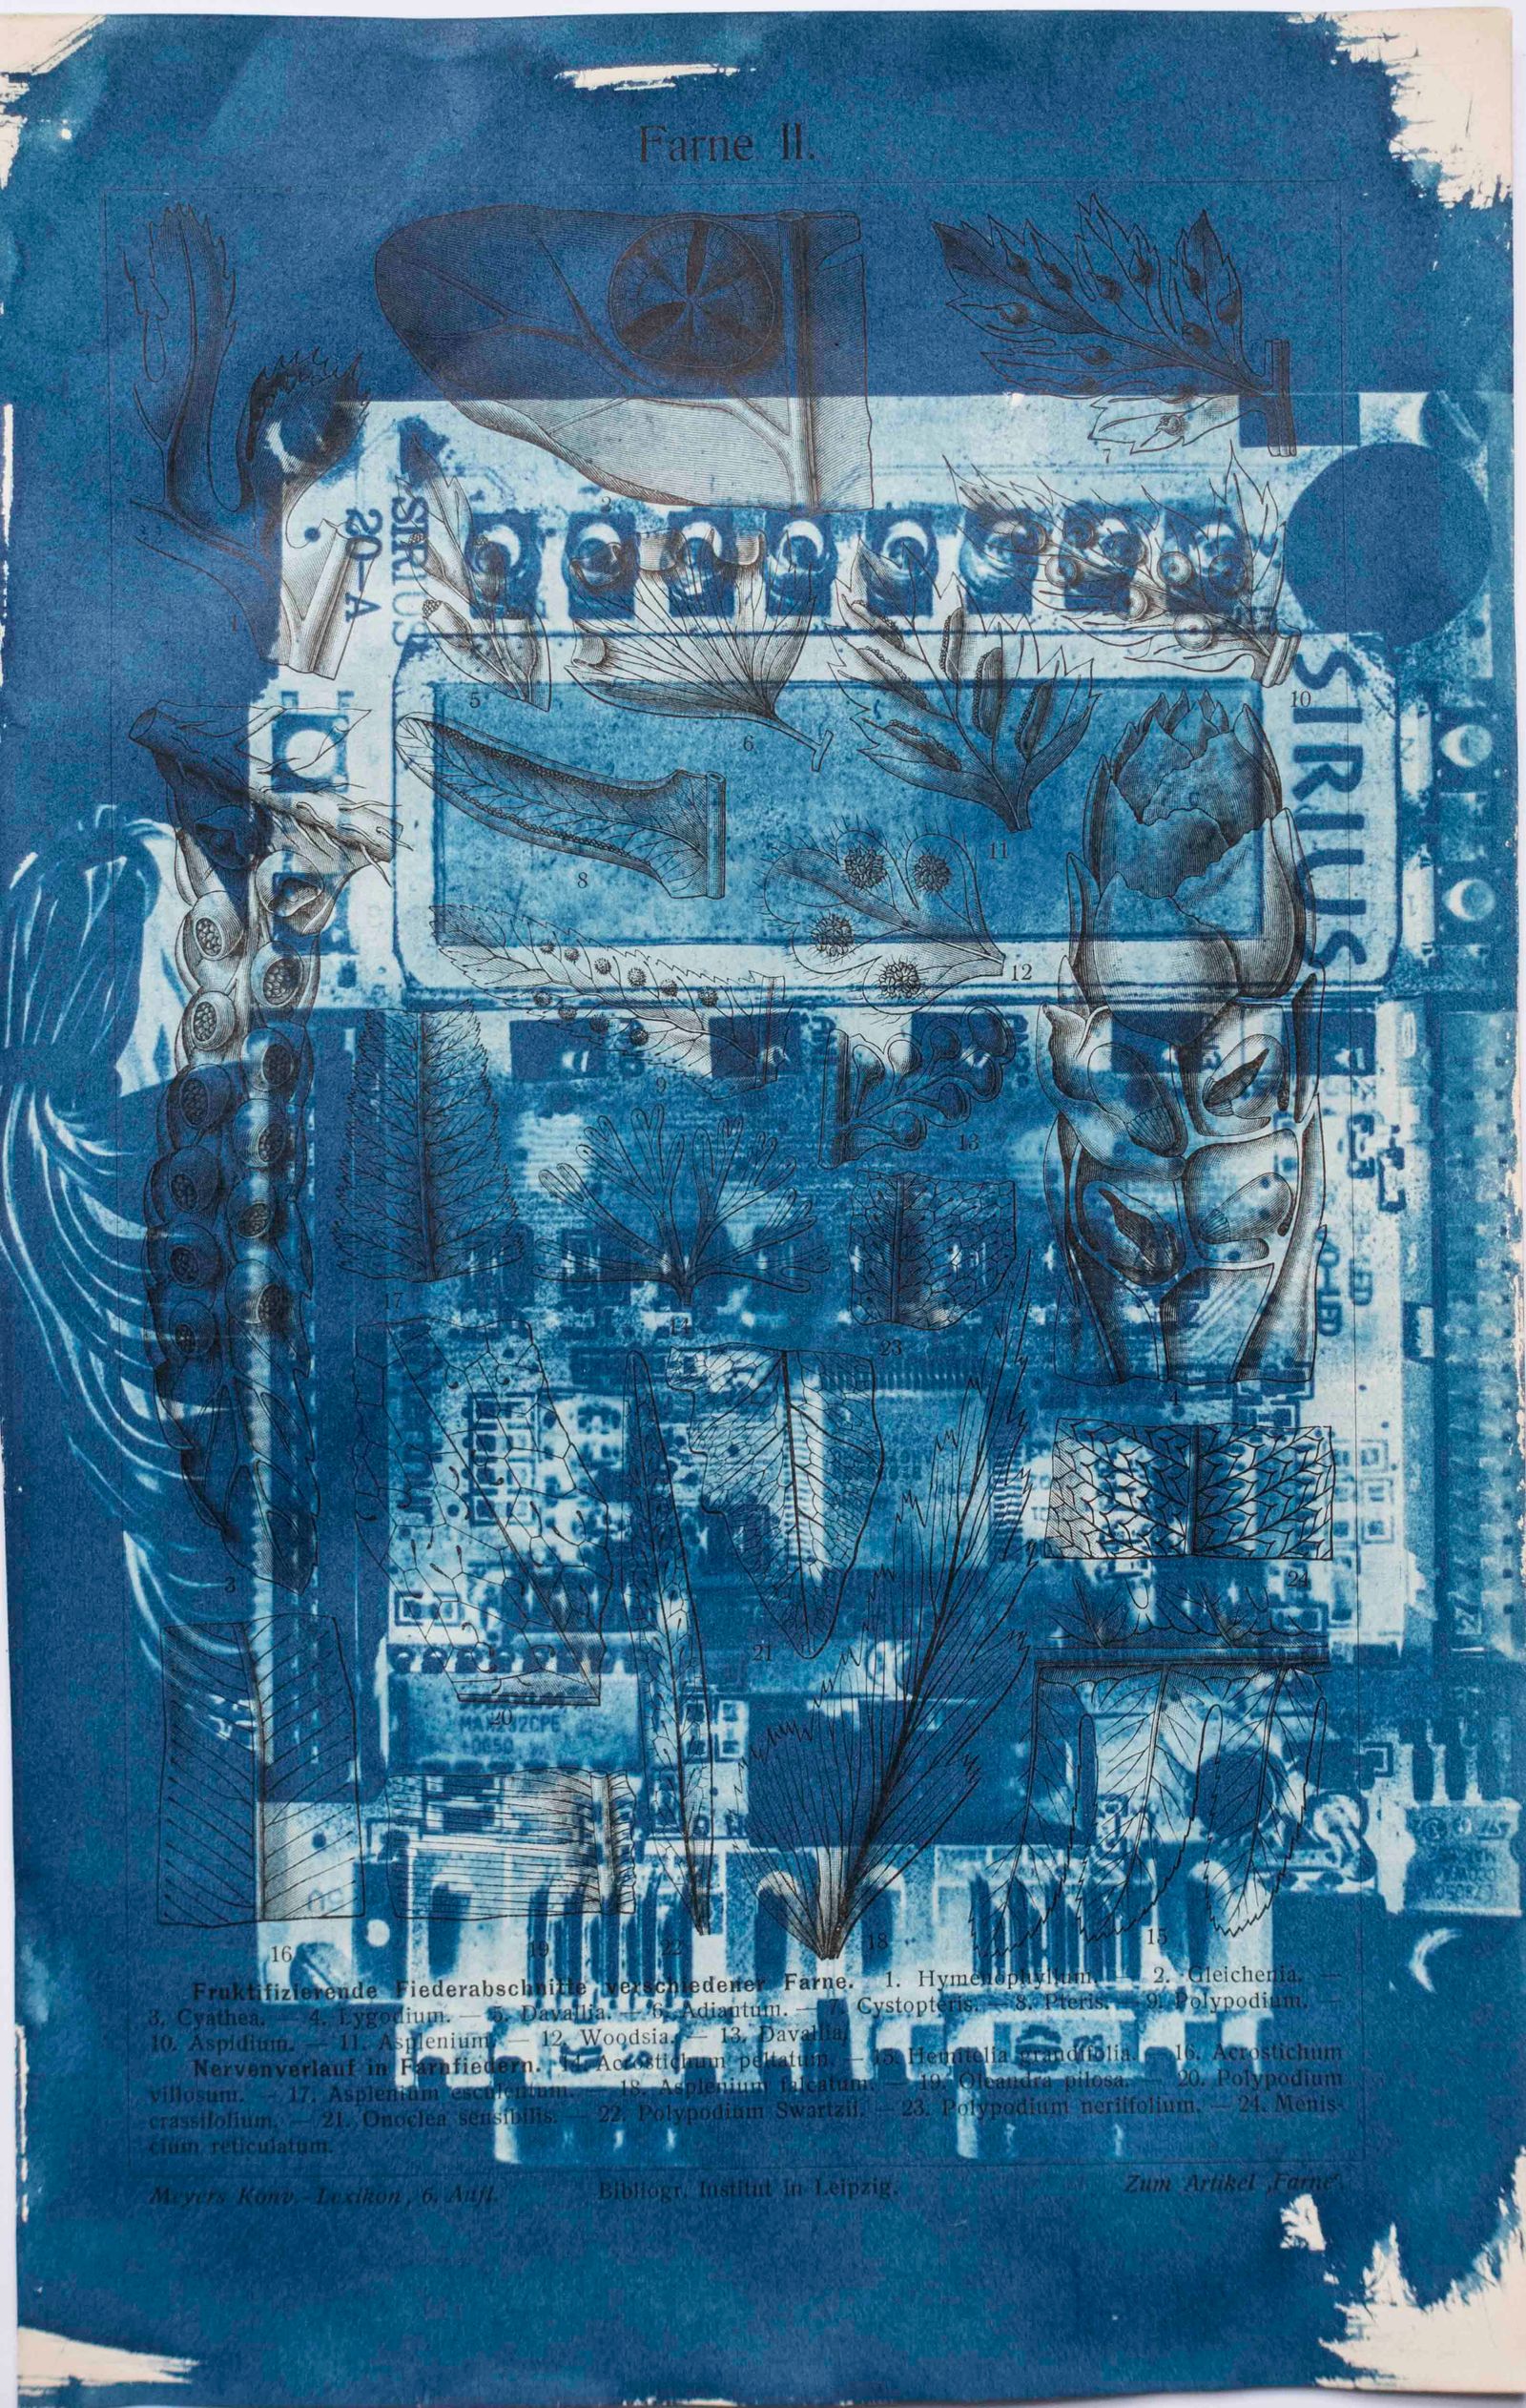 © Florence Iff - Amalgamated Fragmentation/ Technosphere- Board 5 cyanotype on vintage lithography